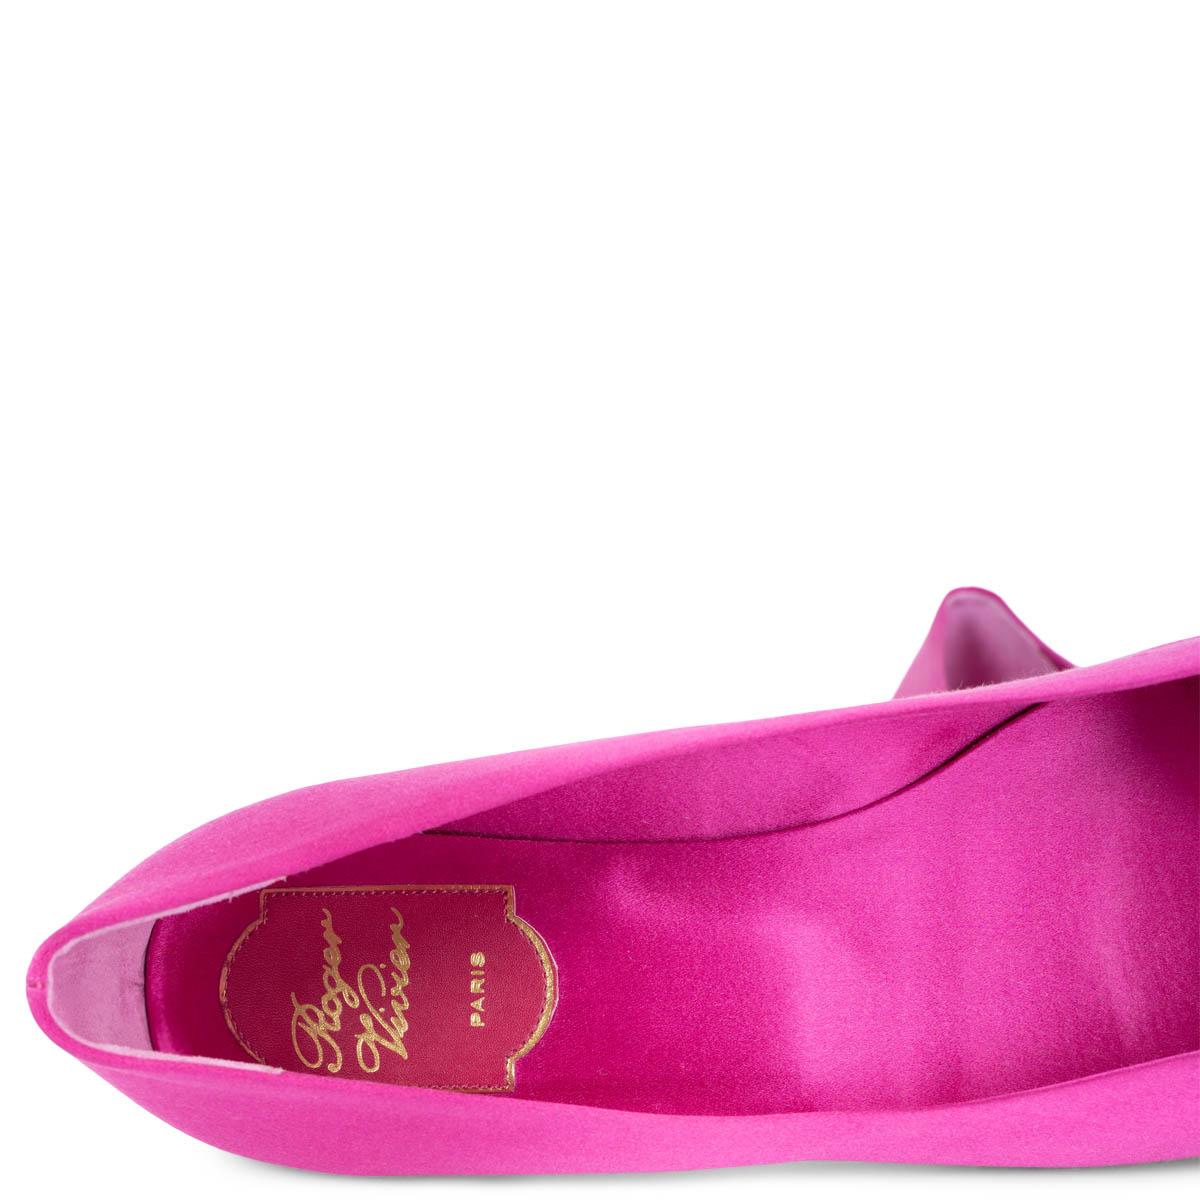 ROGER VIVIER fuchsia satin TROMPETTE Ballet Flats Shoes 38 For Sale 2